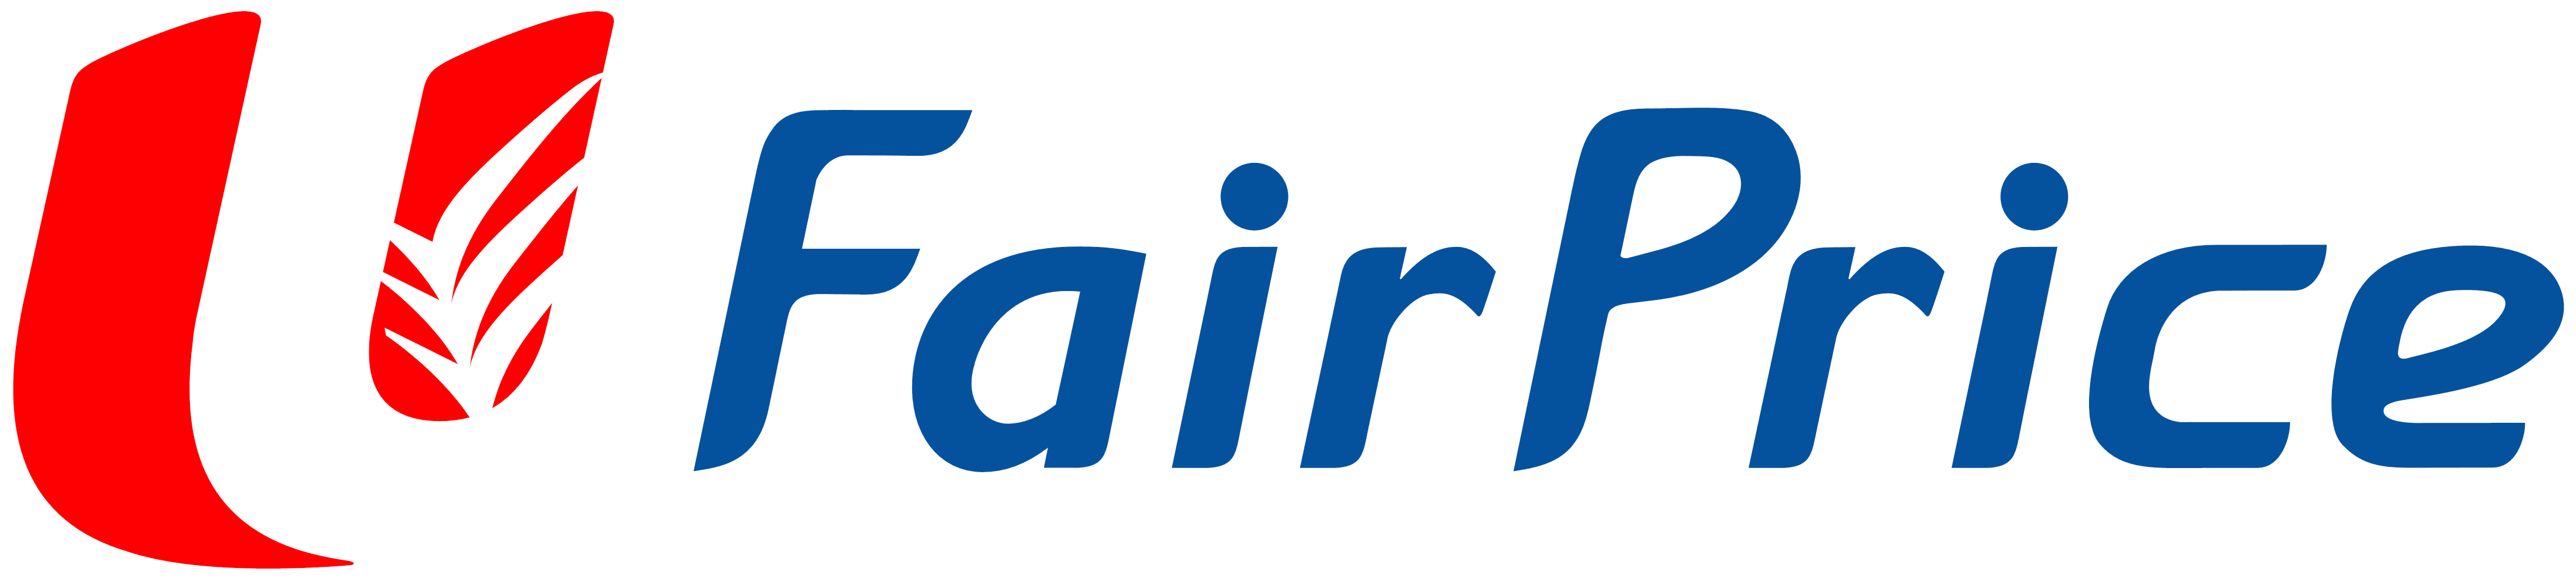 FairPrice - Fairprice Logo PN